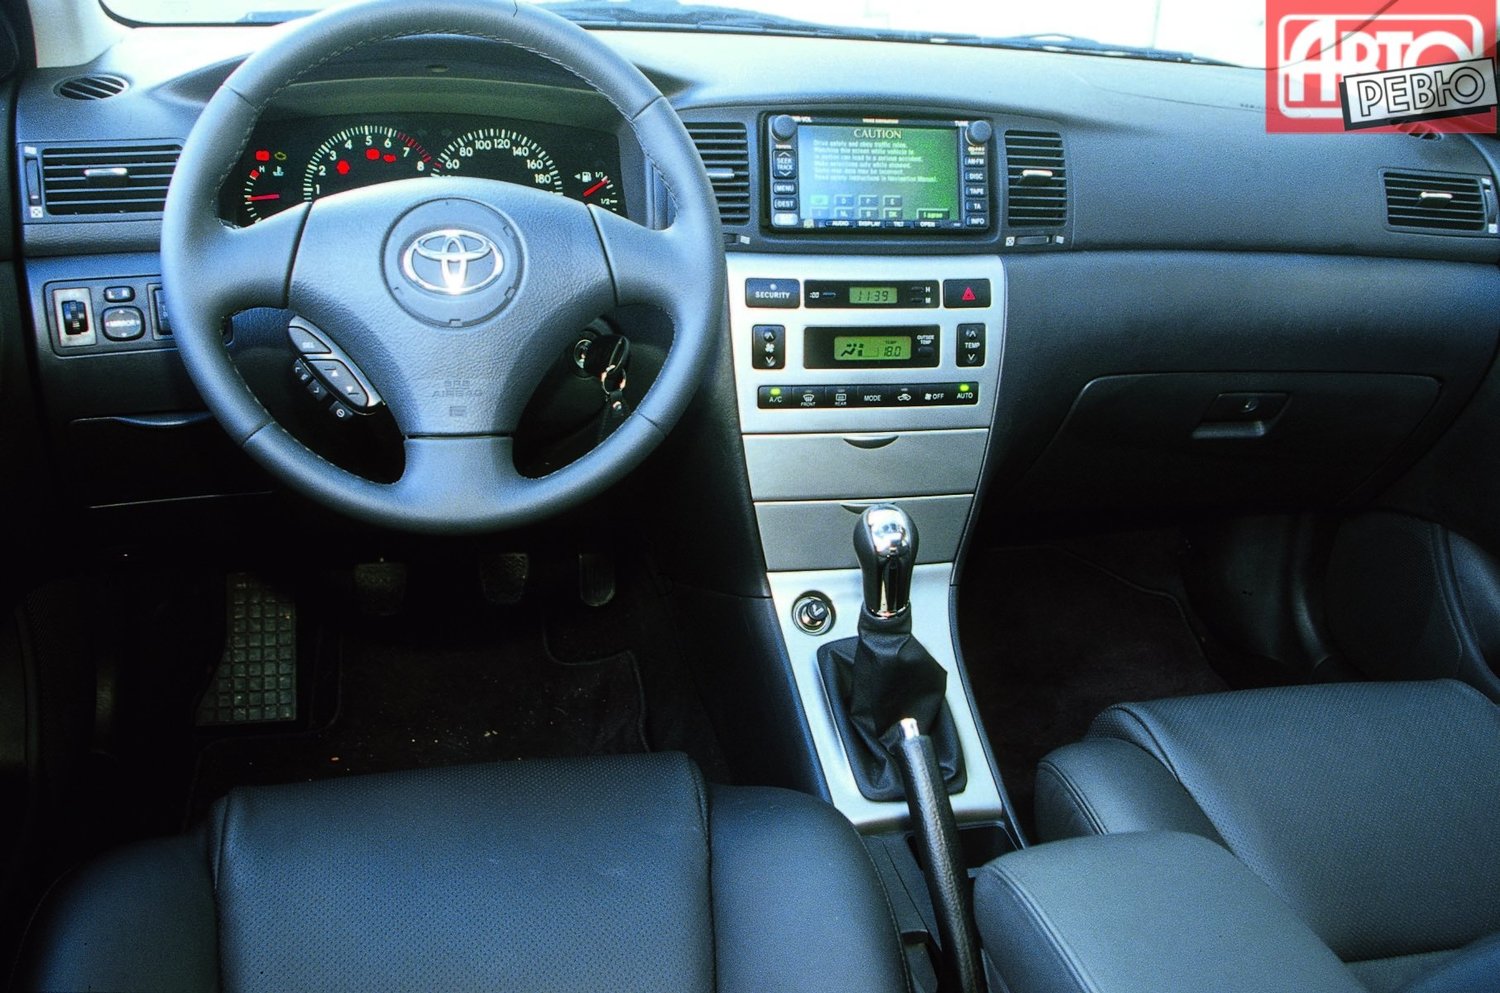 хэтчбек 5 дв. Toyota Corolla 2001 - 2004г выпуска модификация 1.4 MT (97 л.с.)